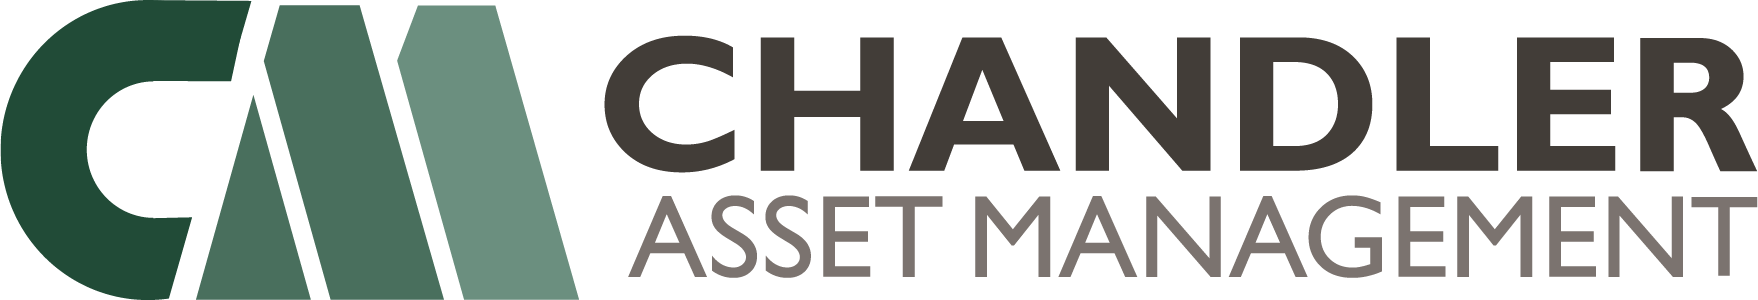 Chandler Asset Management logo